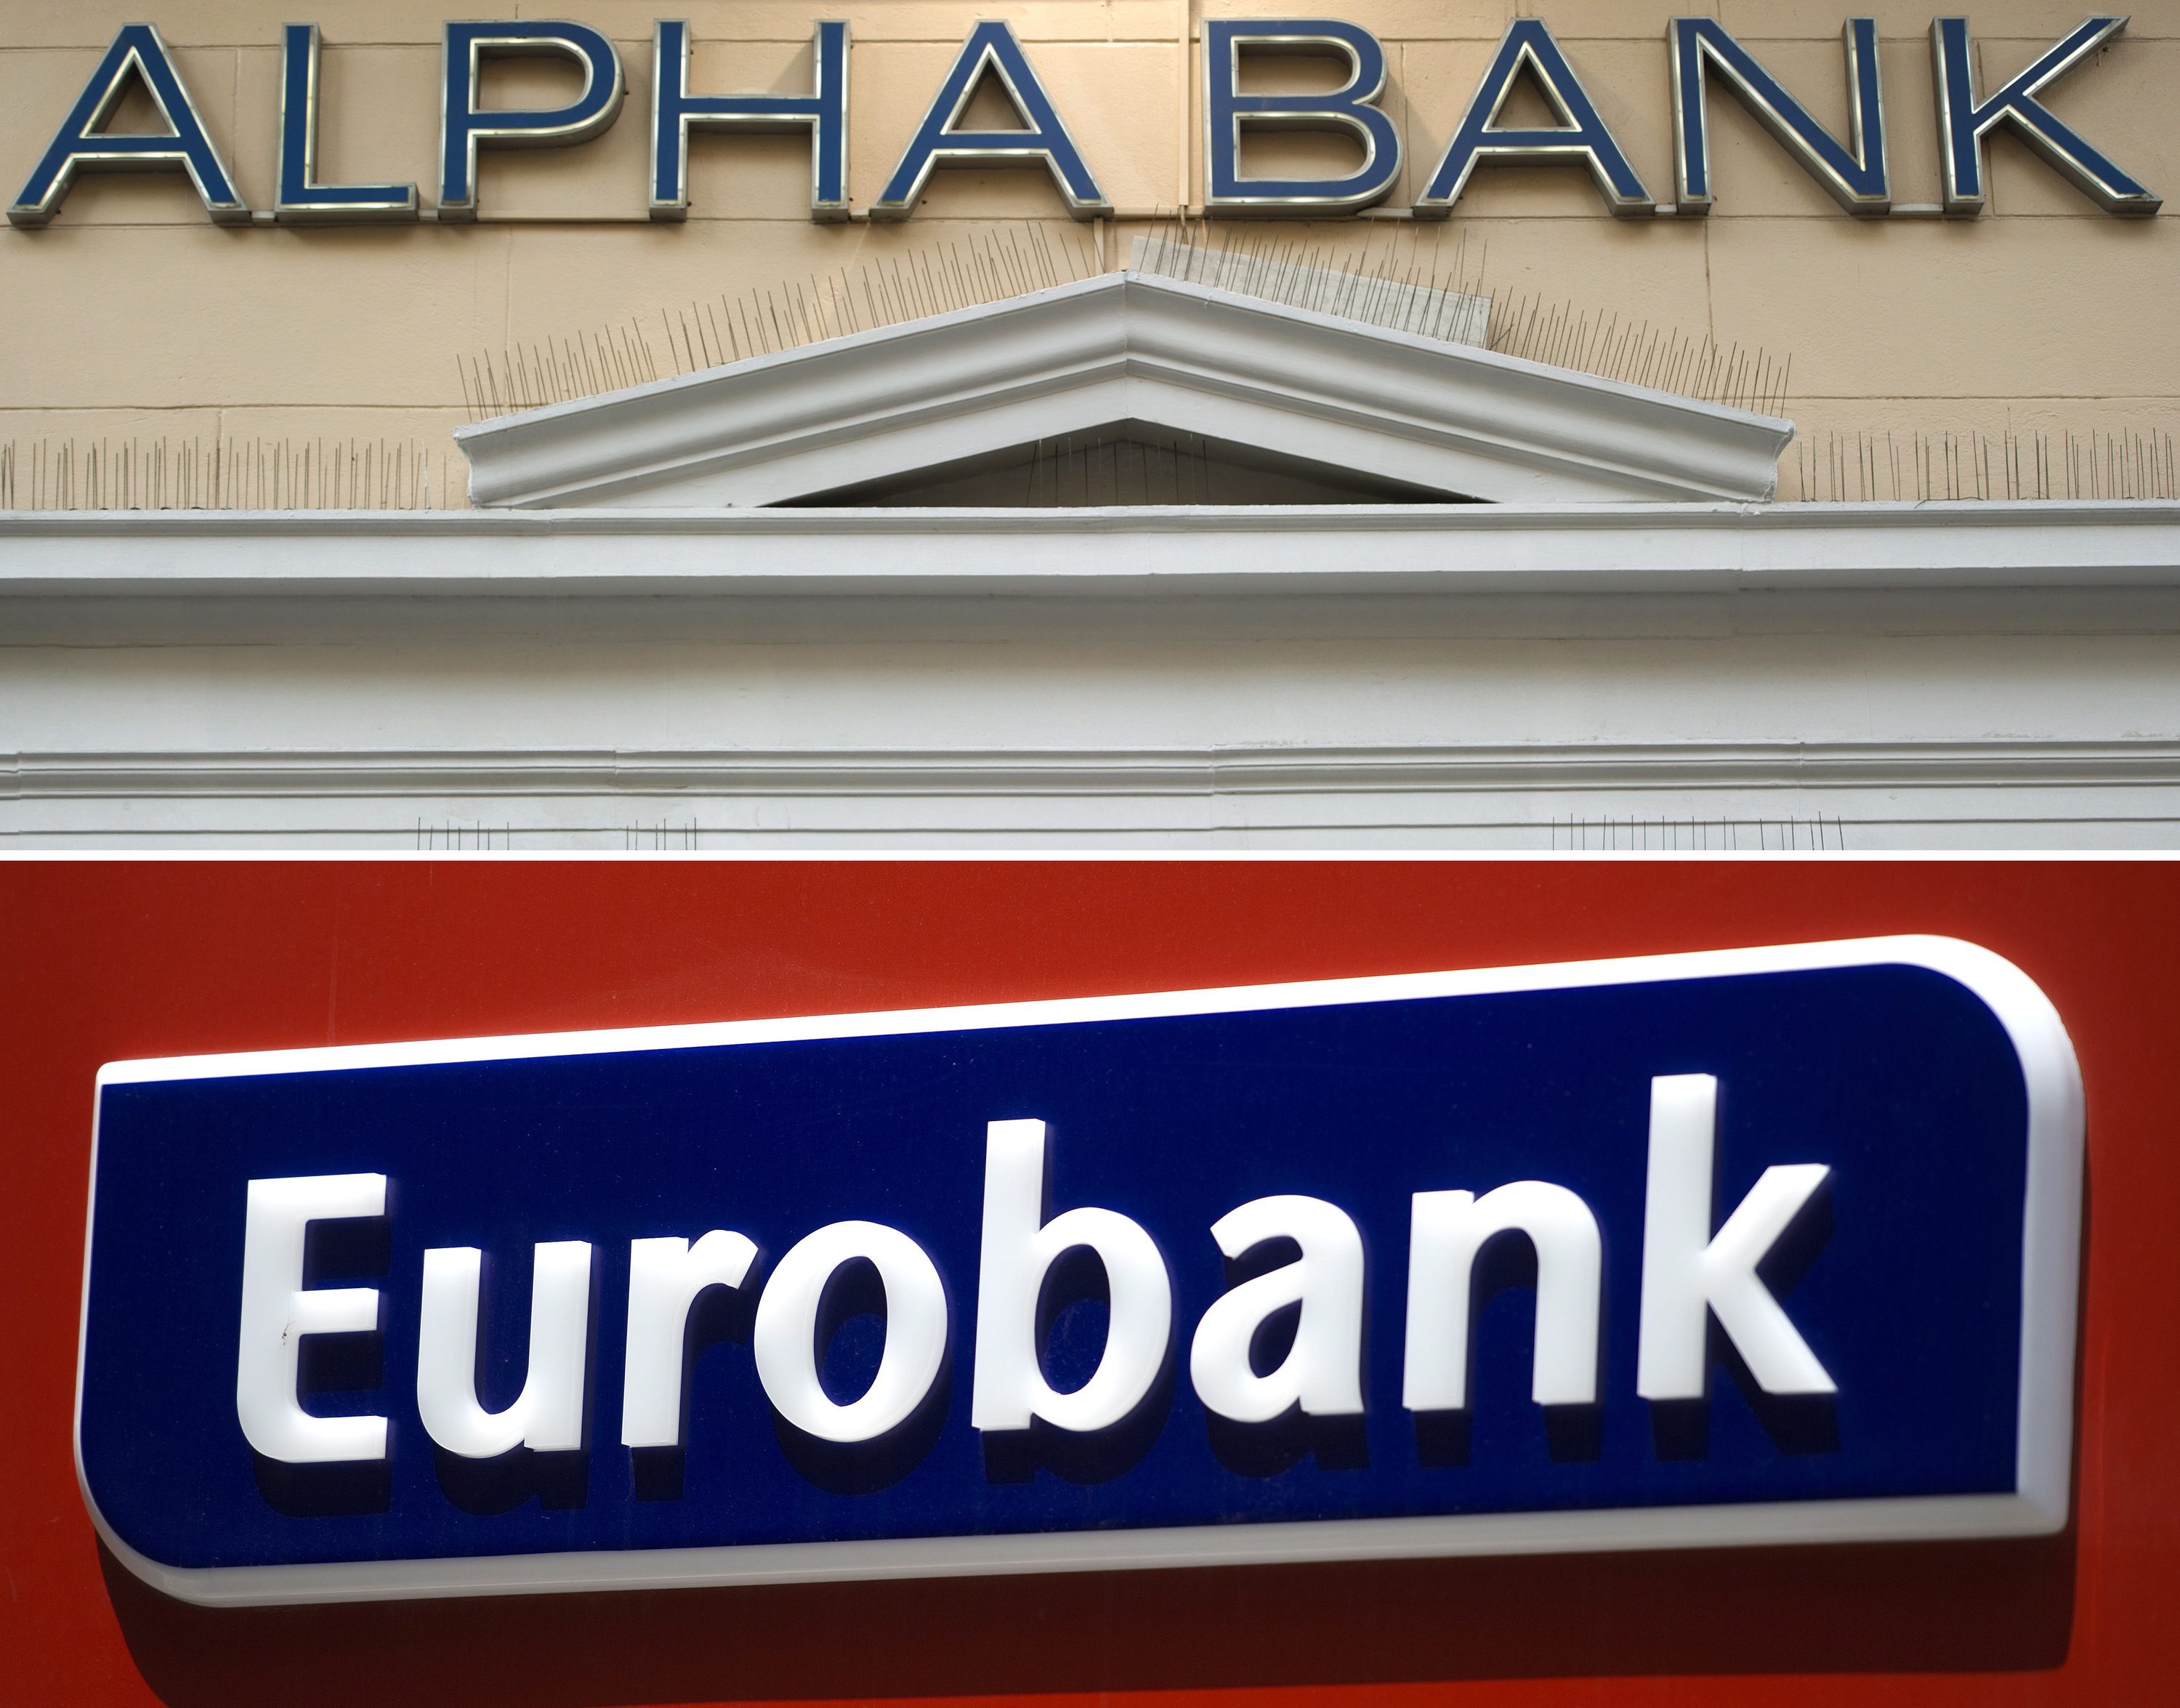 Българската народна банка даде предварително одобрение за придобиването на банка "Пиреос" от "Юробанк", известна у нас като "Пощенска банка"